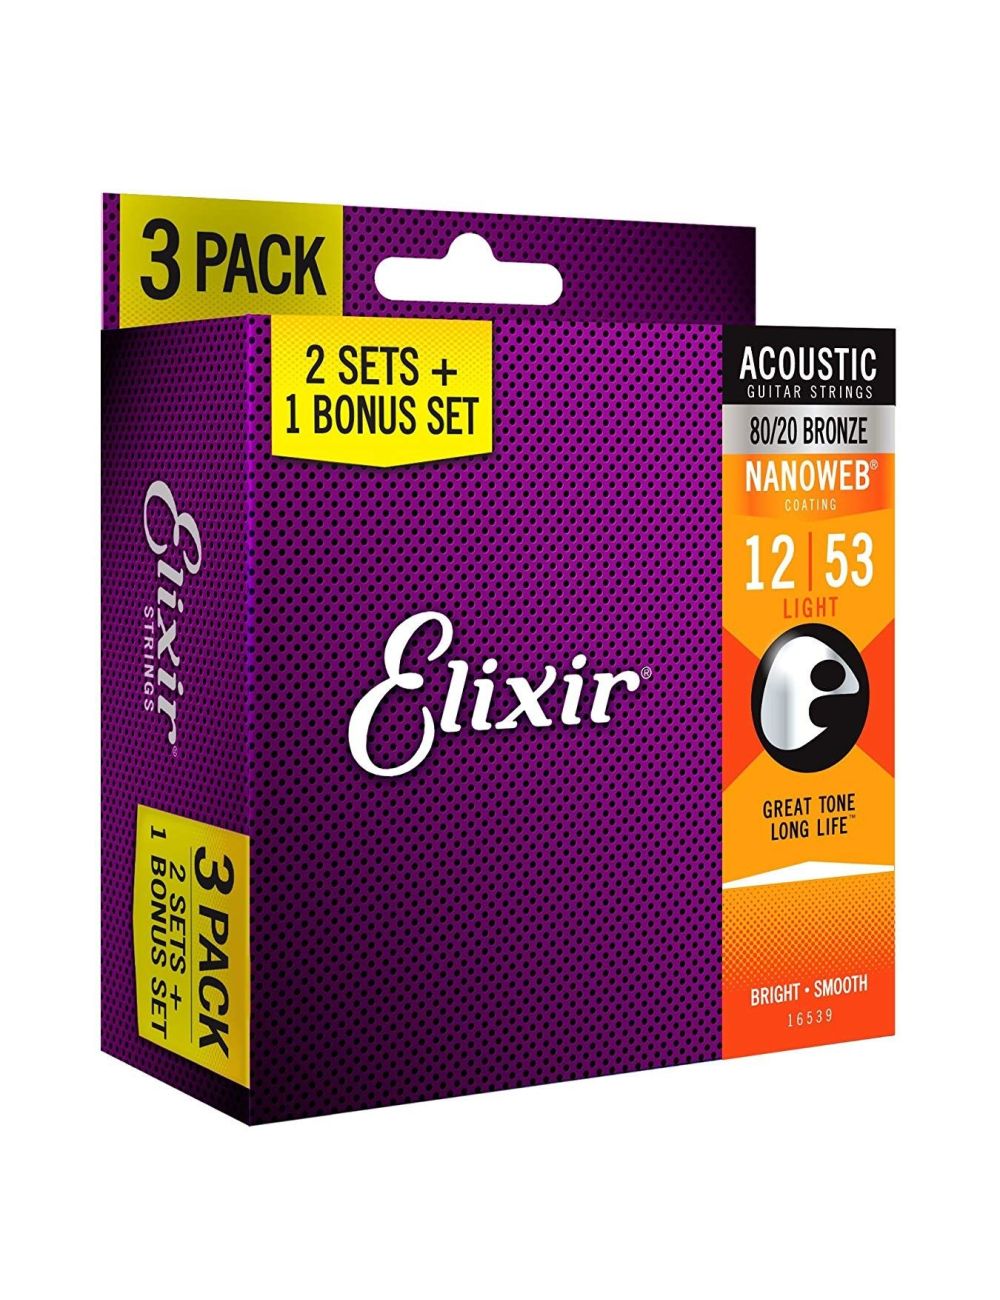 Cuerdas de guitarra acústica Elixir 80/20 Bronze 12-53